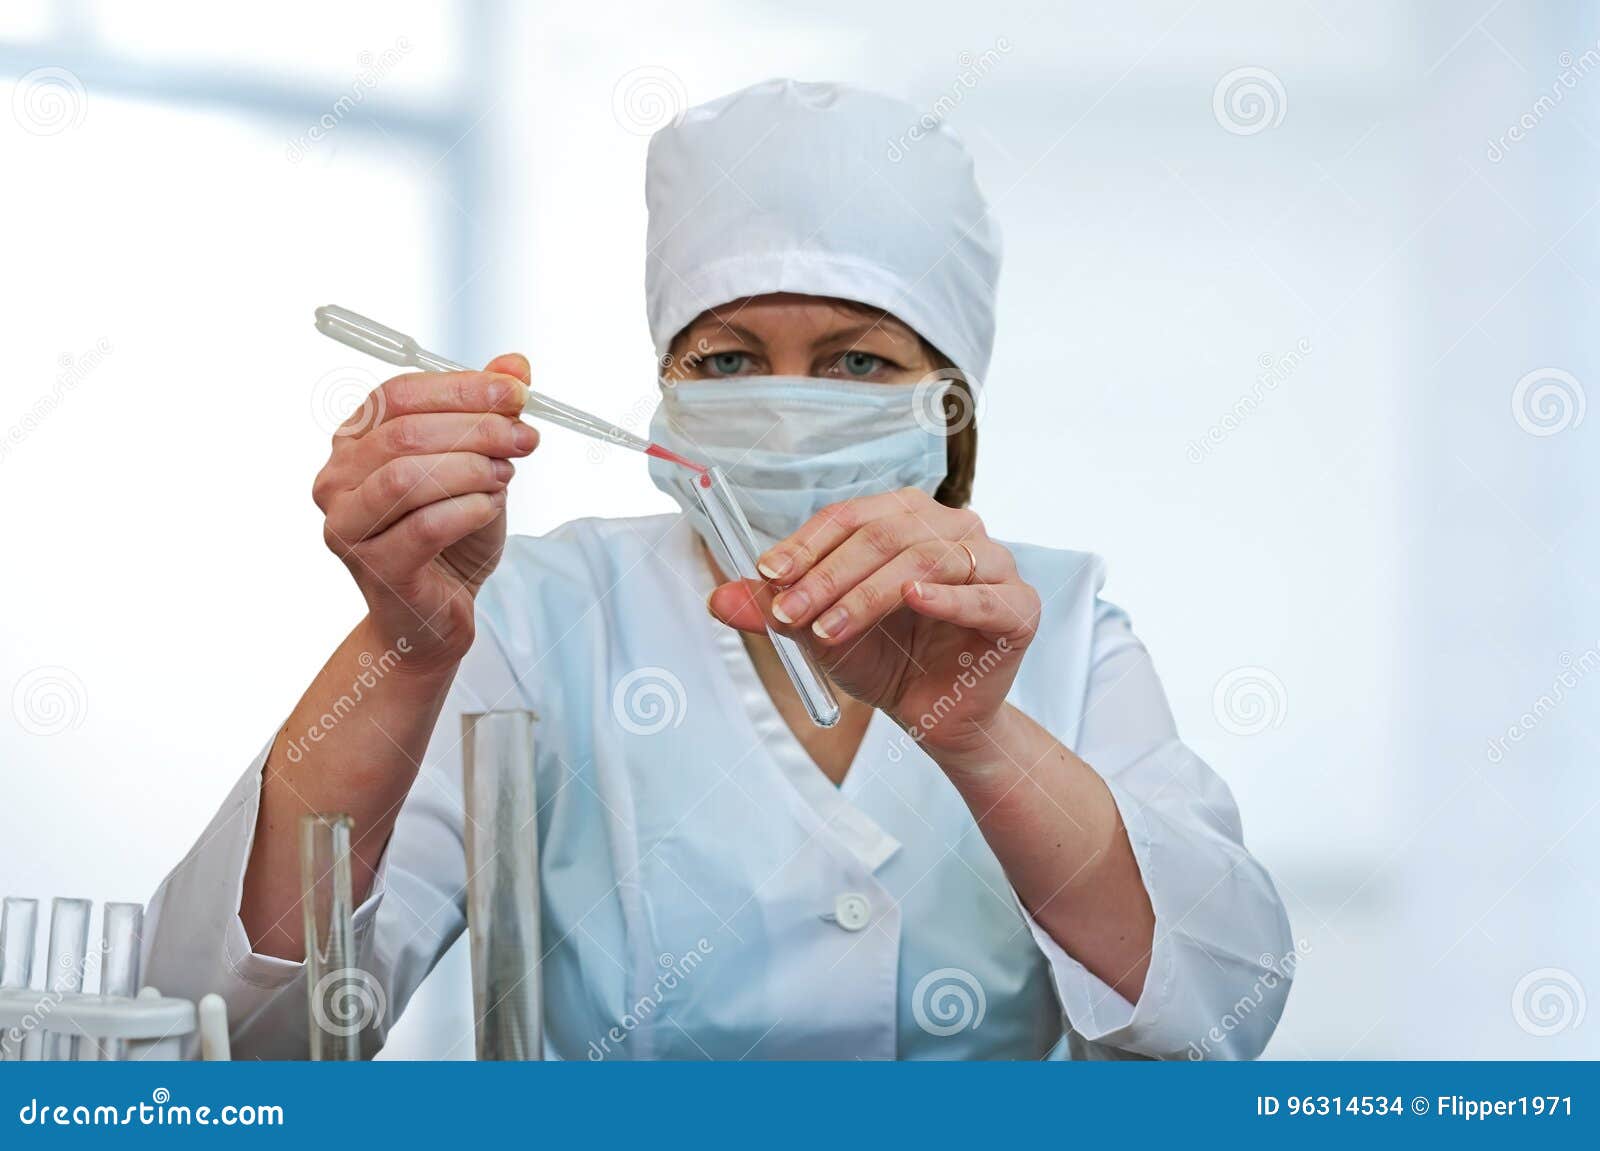 Тесты медицинских сестер процедурных кабинетов. Медицинская сестра процедурного кабинета. Медсестра в процедурном кабинете. Процедурный кабинет медсестра в маске. Медсестры процедурного кабинета в защитных очках.